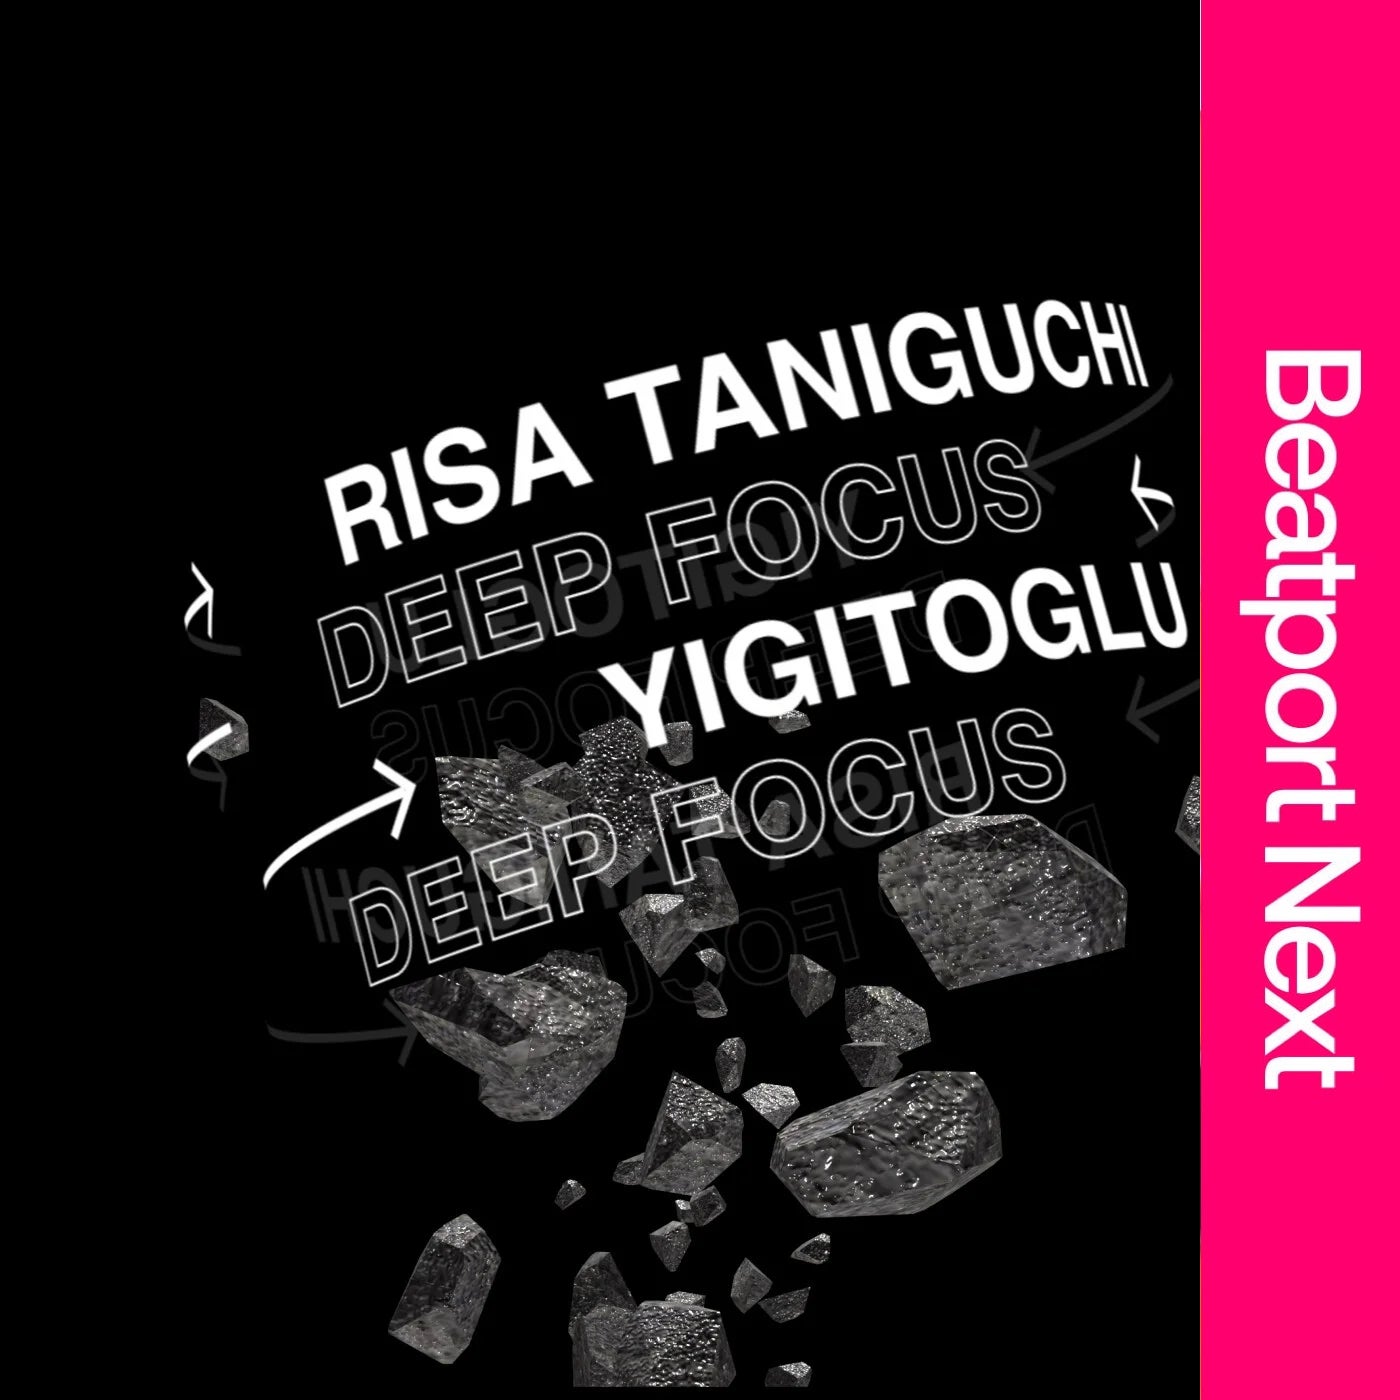 Risa Taniguchi, Yigitoglu - Deep Focus [OCT229]